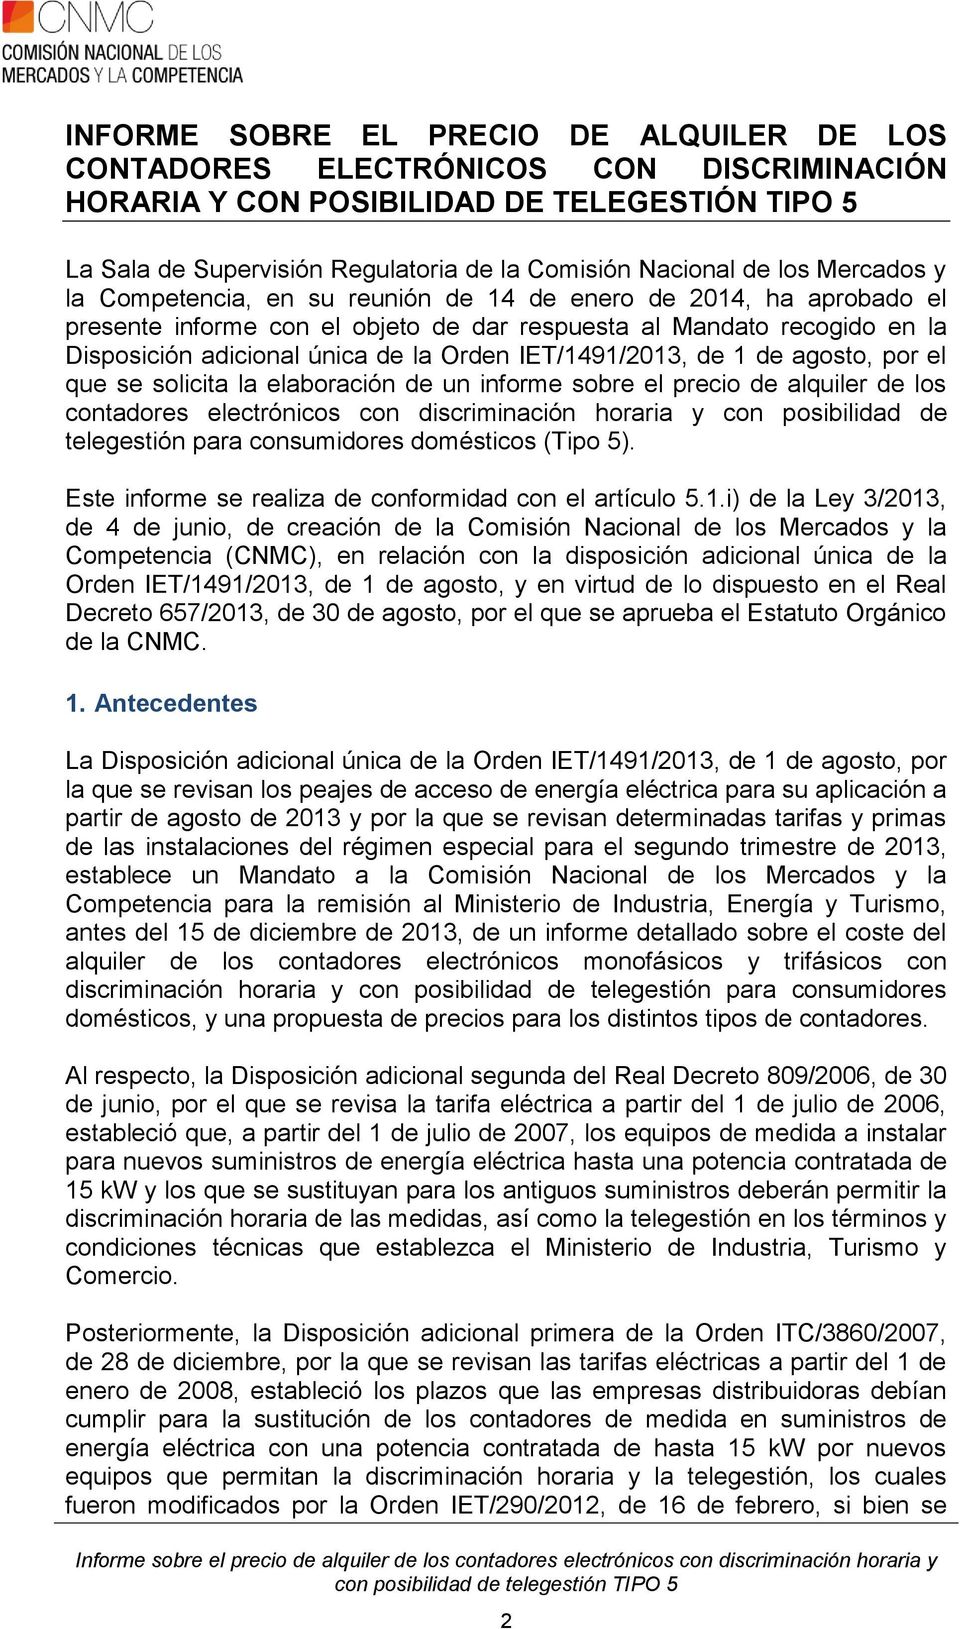 IET/1491/2013, de 1 de agosto, por el que se solicita la elaboración de un informe sobre el precio de alquiler de los contadores electrónicos con discriminación horaria y con posibilidad de